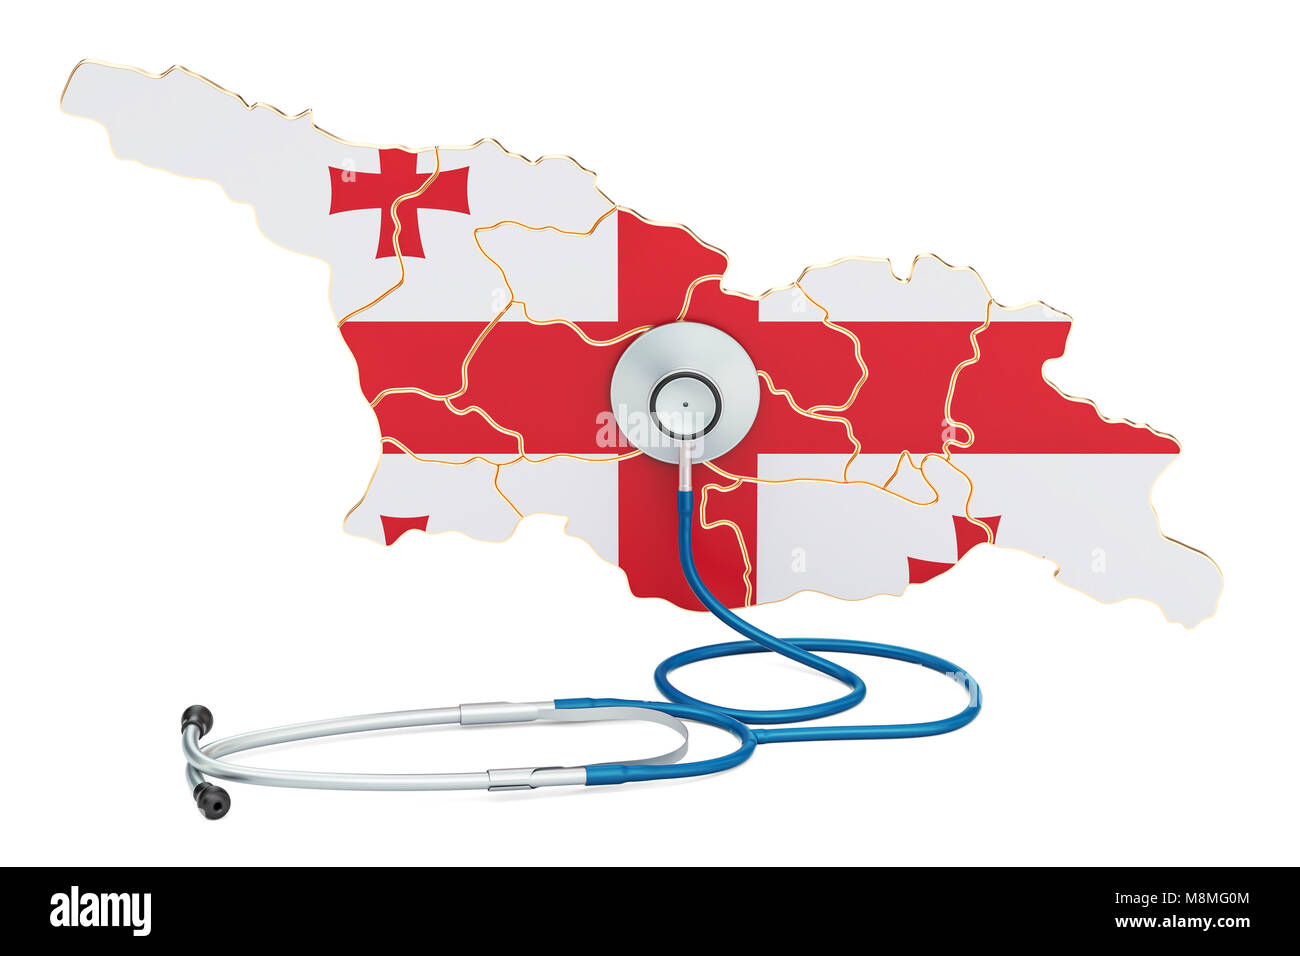 Georgische Karte mit Stethoskop, national Health Care Concept, 3D-Rendering Stockfoto